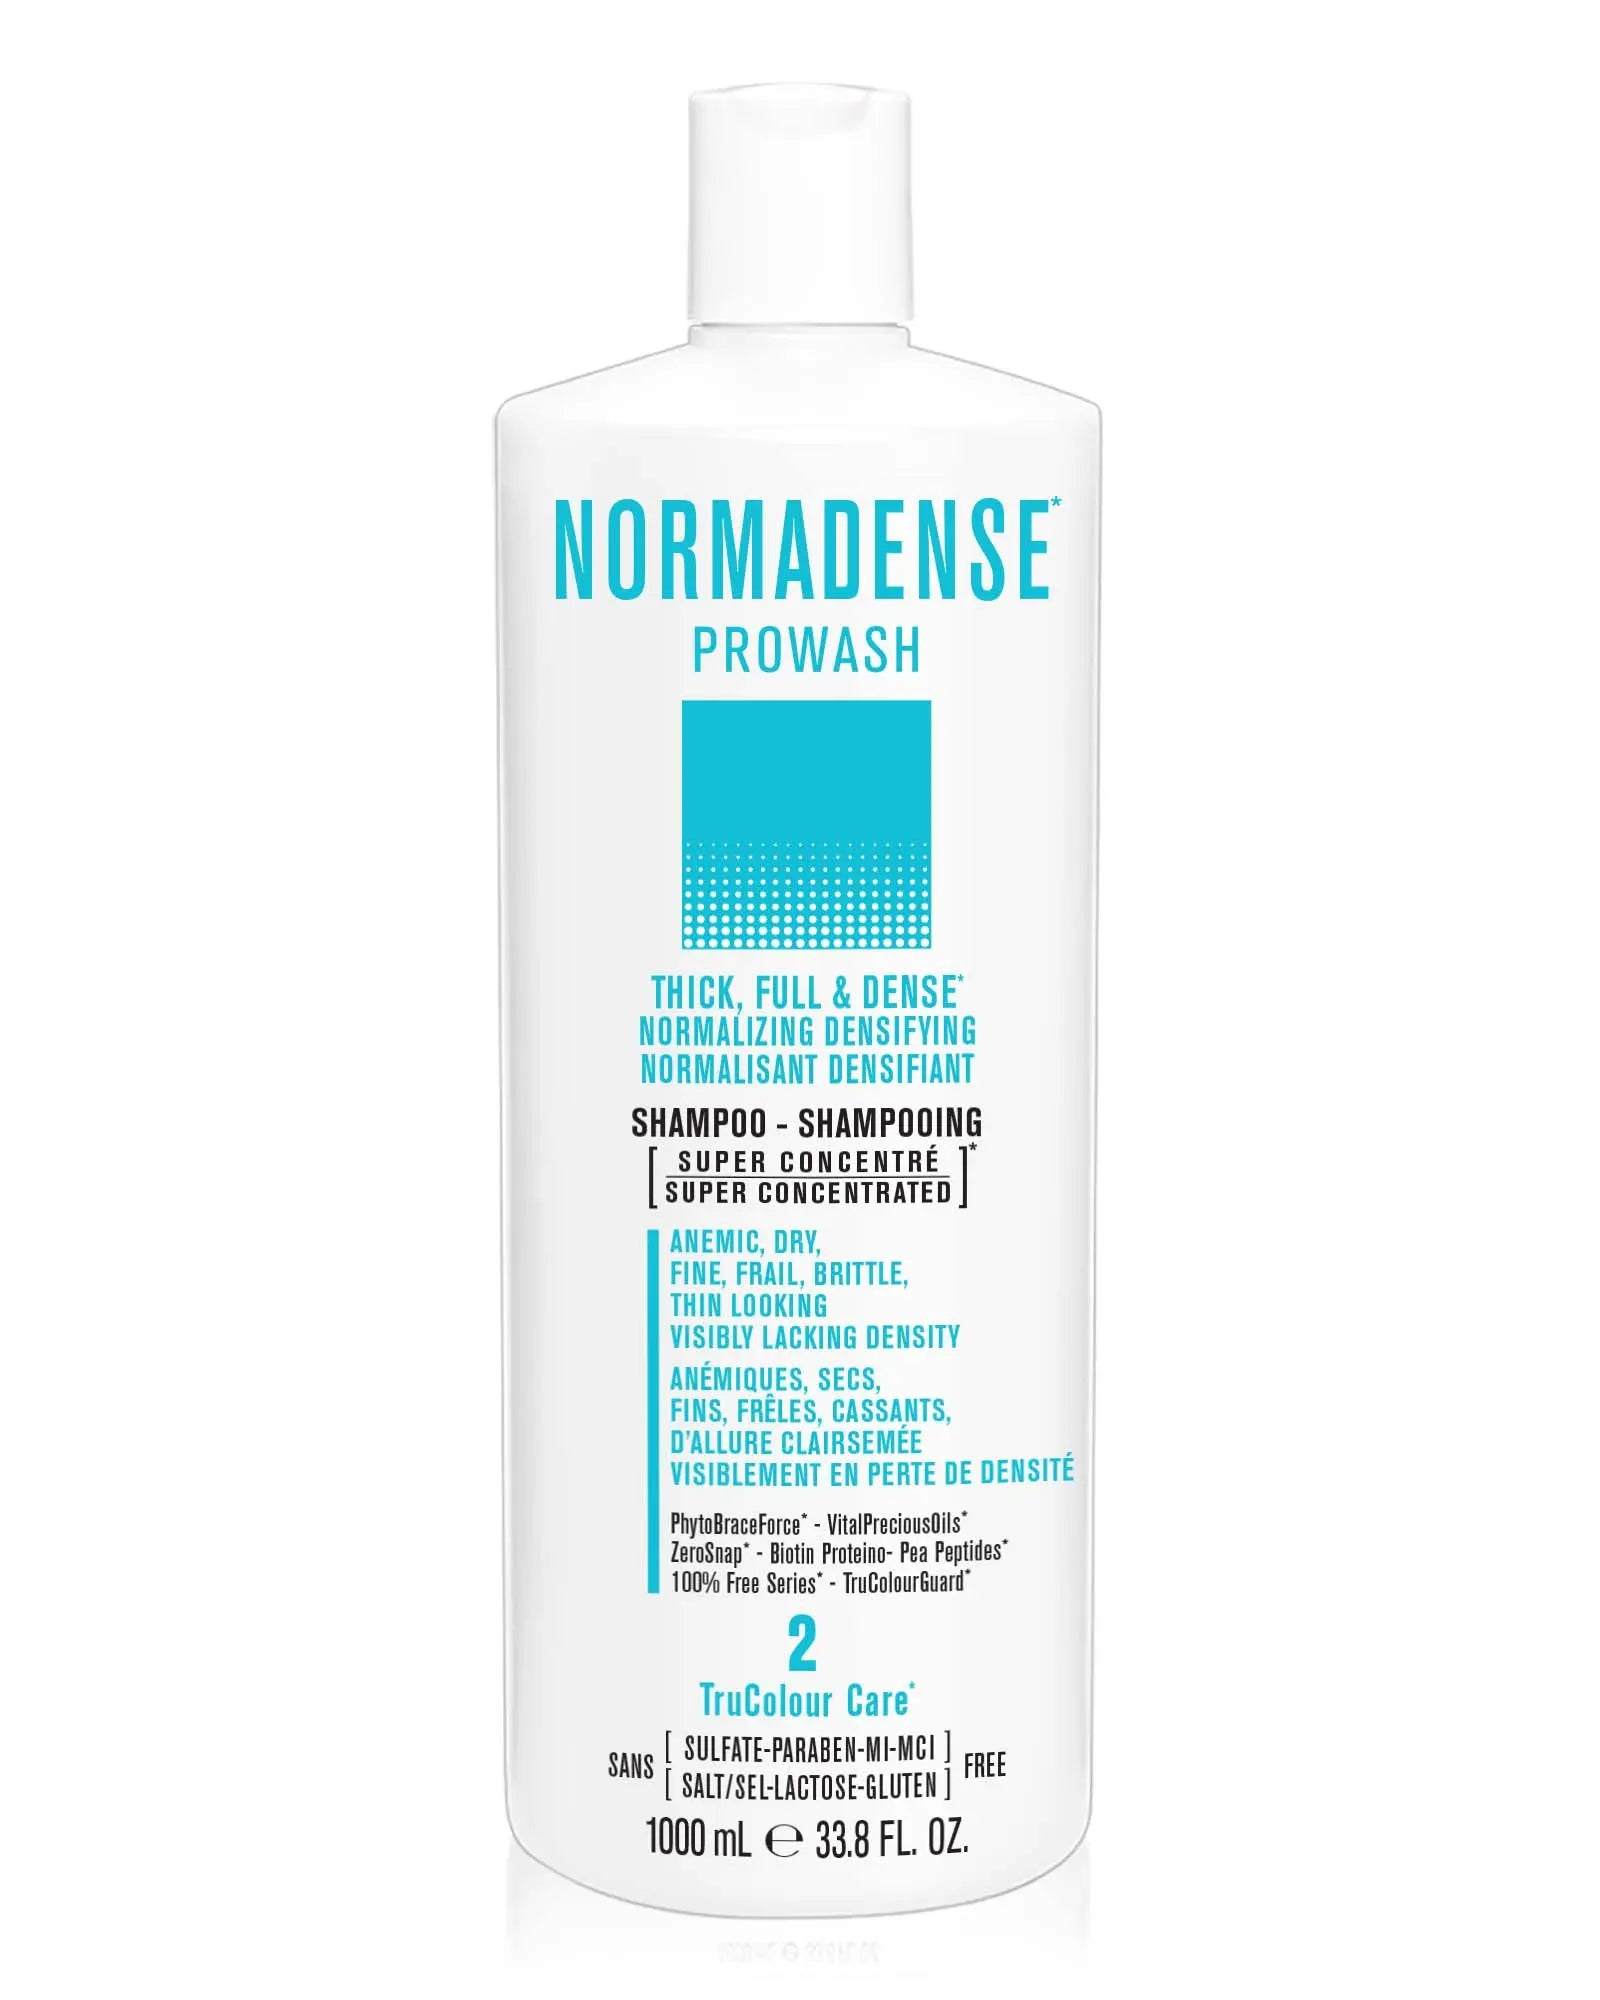 NORMADENSE 2 Prowash Vegan Hair ShampooNORMADENSE 2 Prowash Vegan Hair ShampooSNOBGIRLS.com